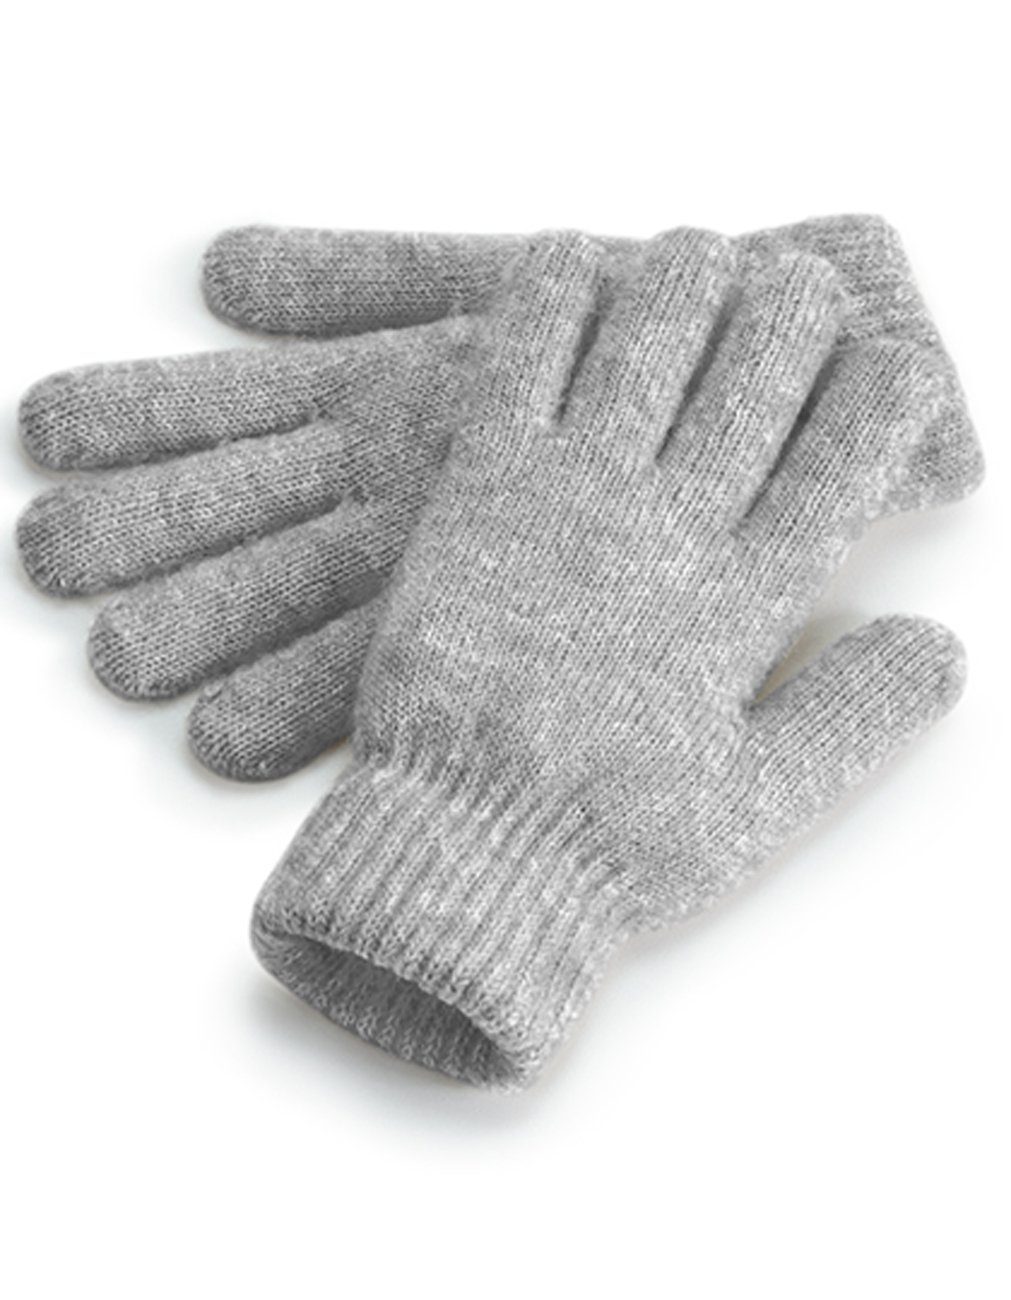 Beliebt ausverkauft Beechfield® Strickhandschuhe Warme Damen Winterhandschuhe Handschuhe / Strickhandschuhe Grau Ärmelabschluss / Gerippter